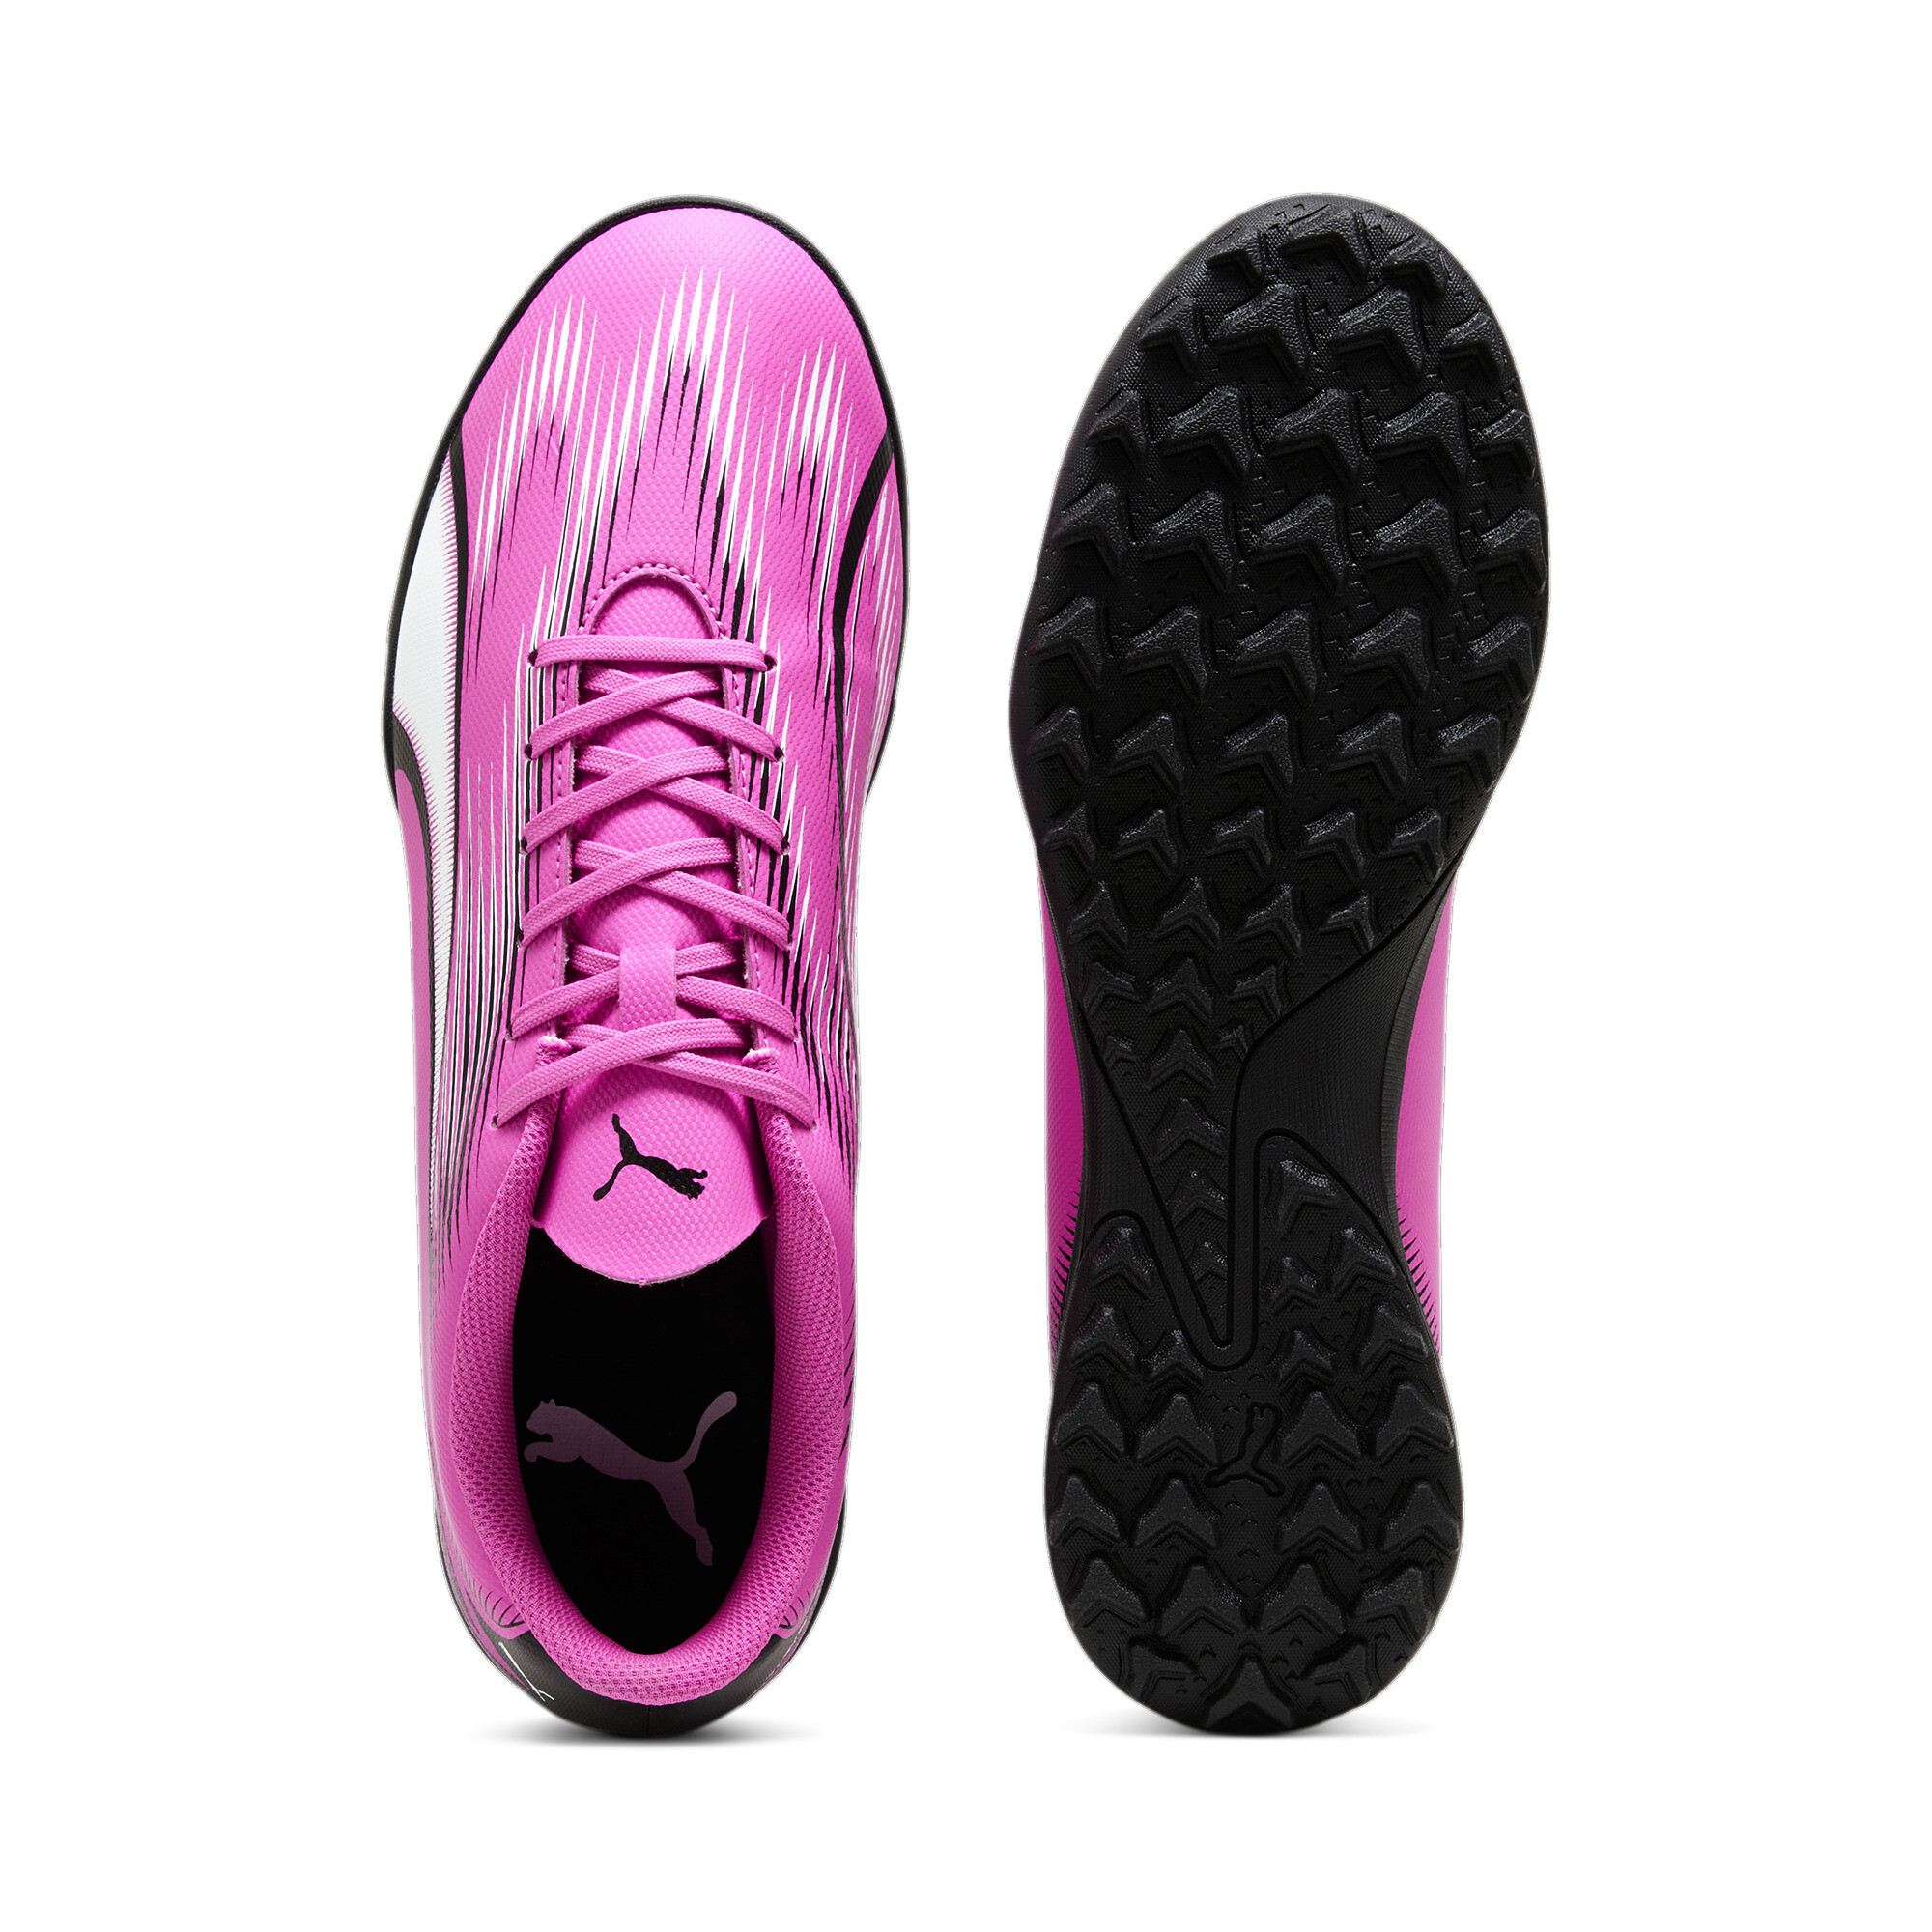 Men's PUMA ULTRA PLAY TT Football Boots In Pink, Size EU 41